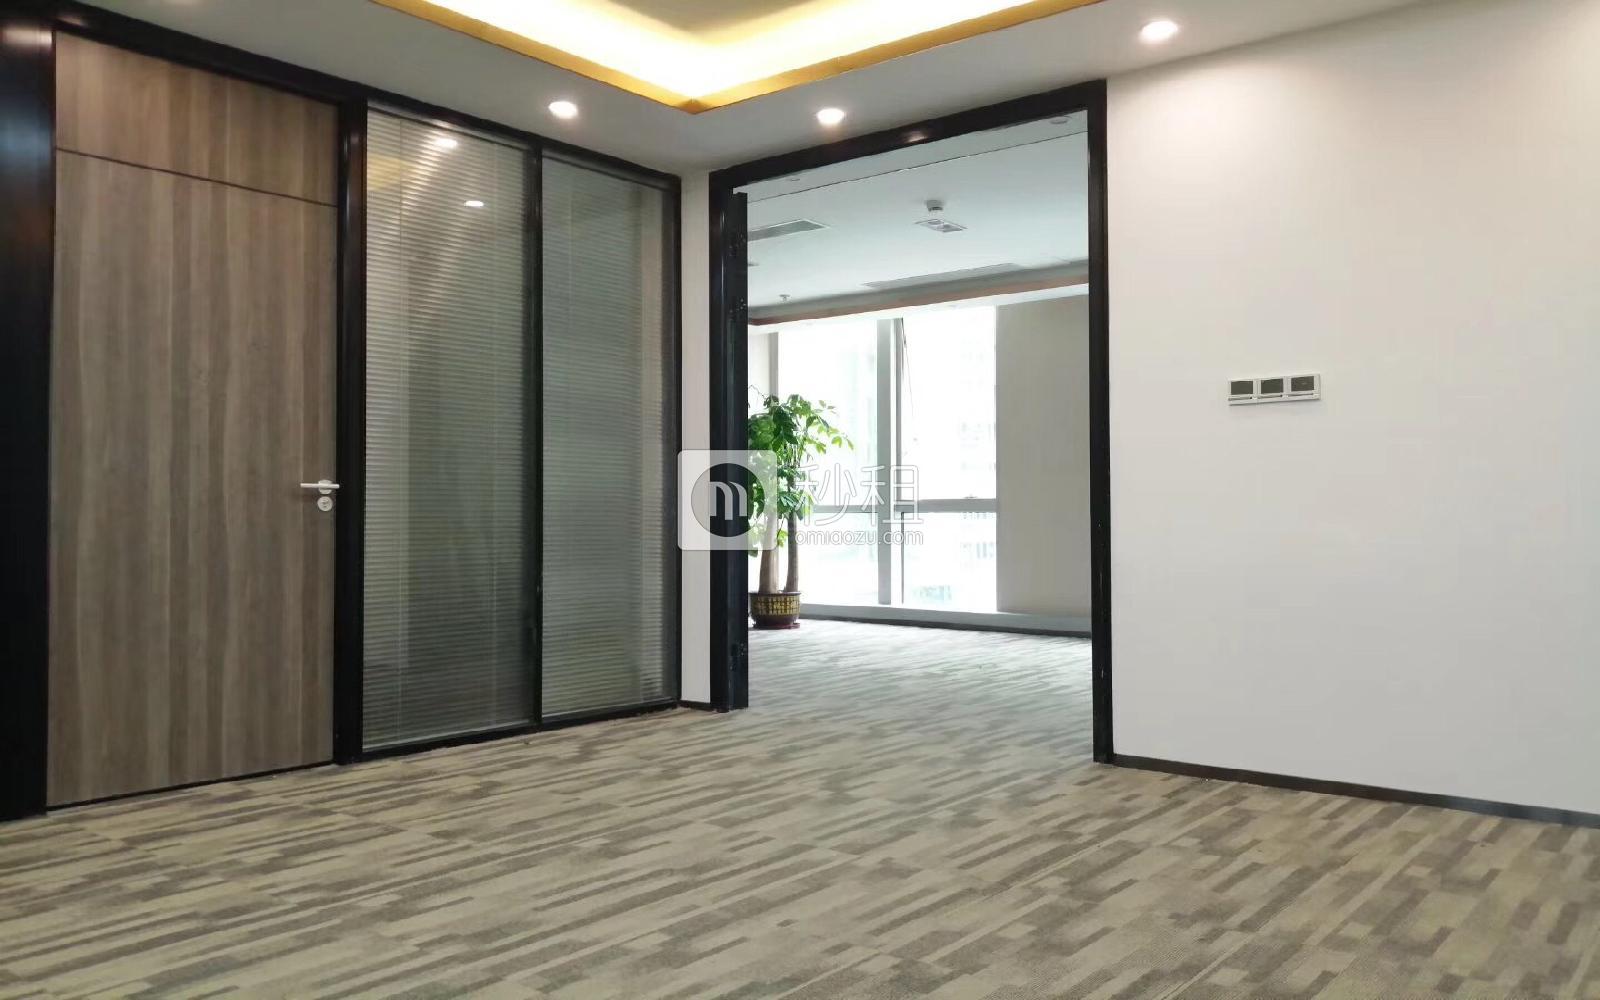 新华保险大厦写字楼出租306平米豪装办公室148元/m².月